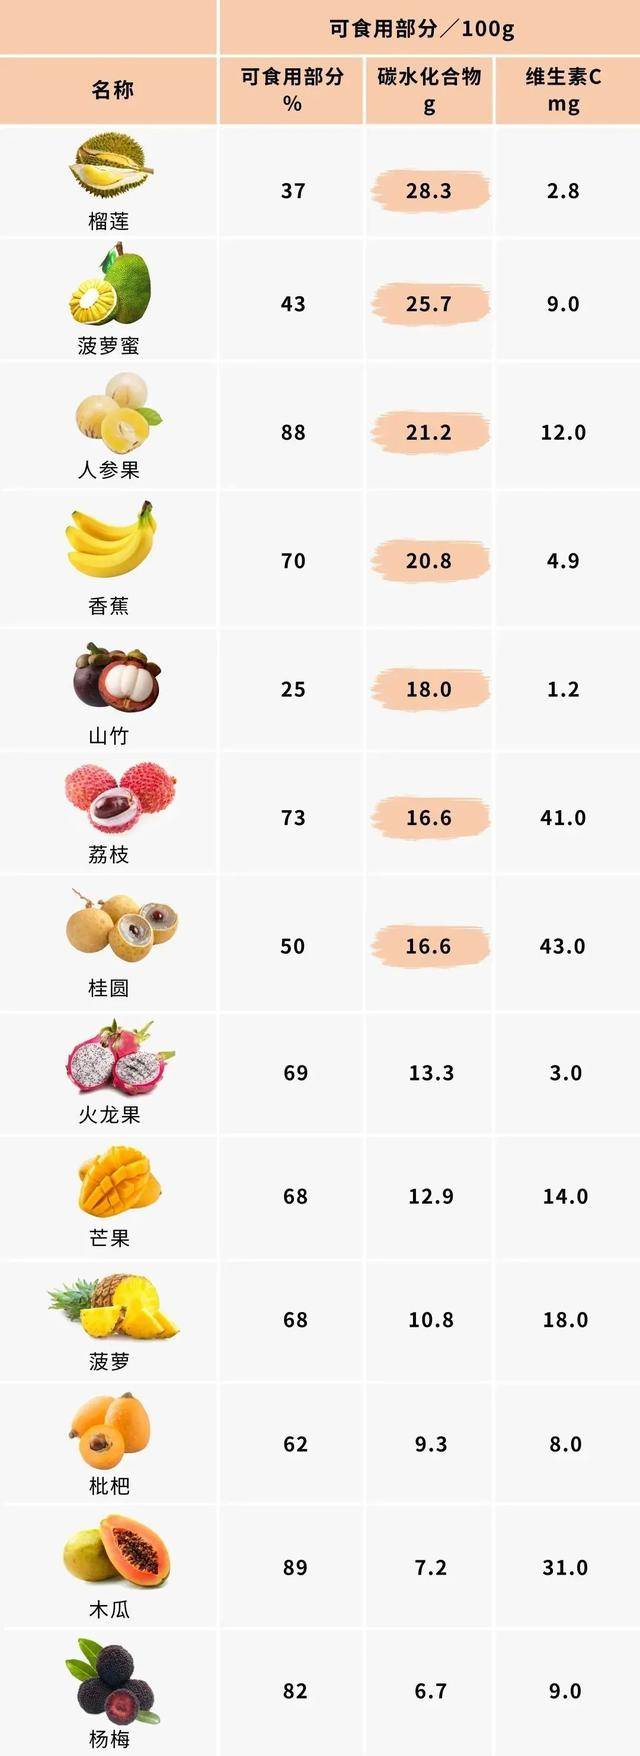 燕教授揭秘水果糖分排行榜,小心越吃越胖!